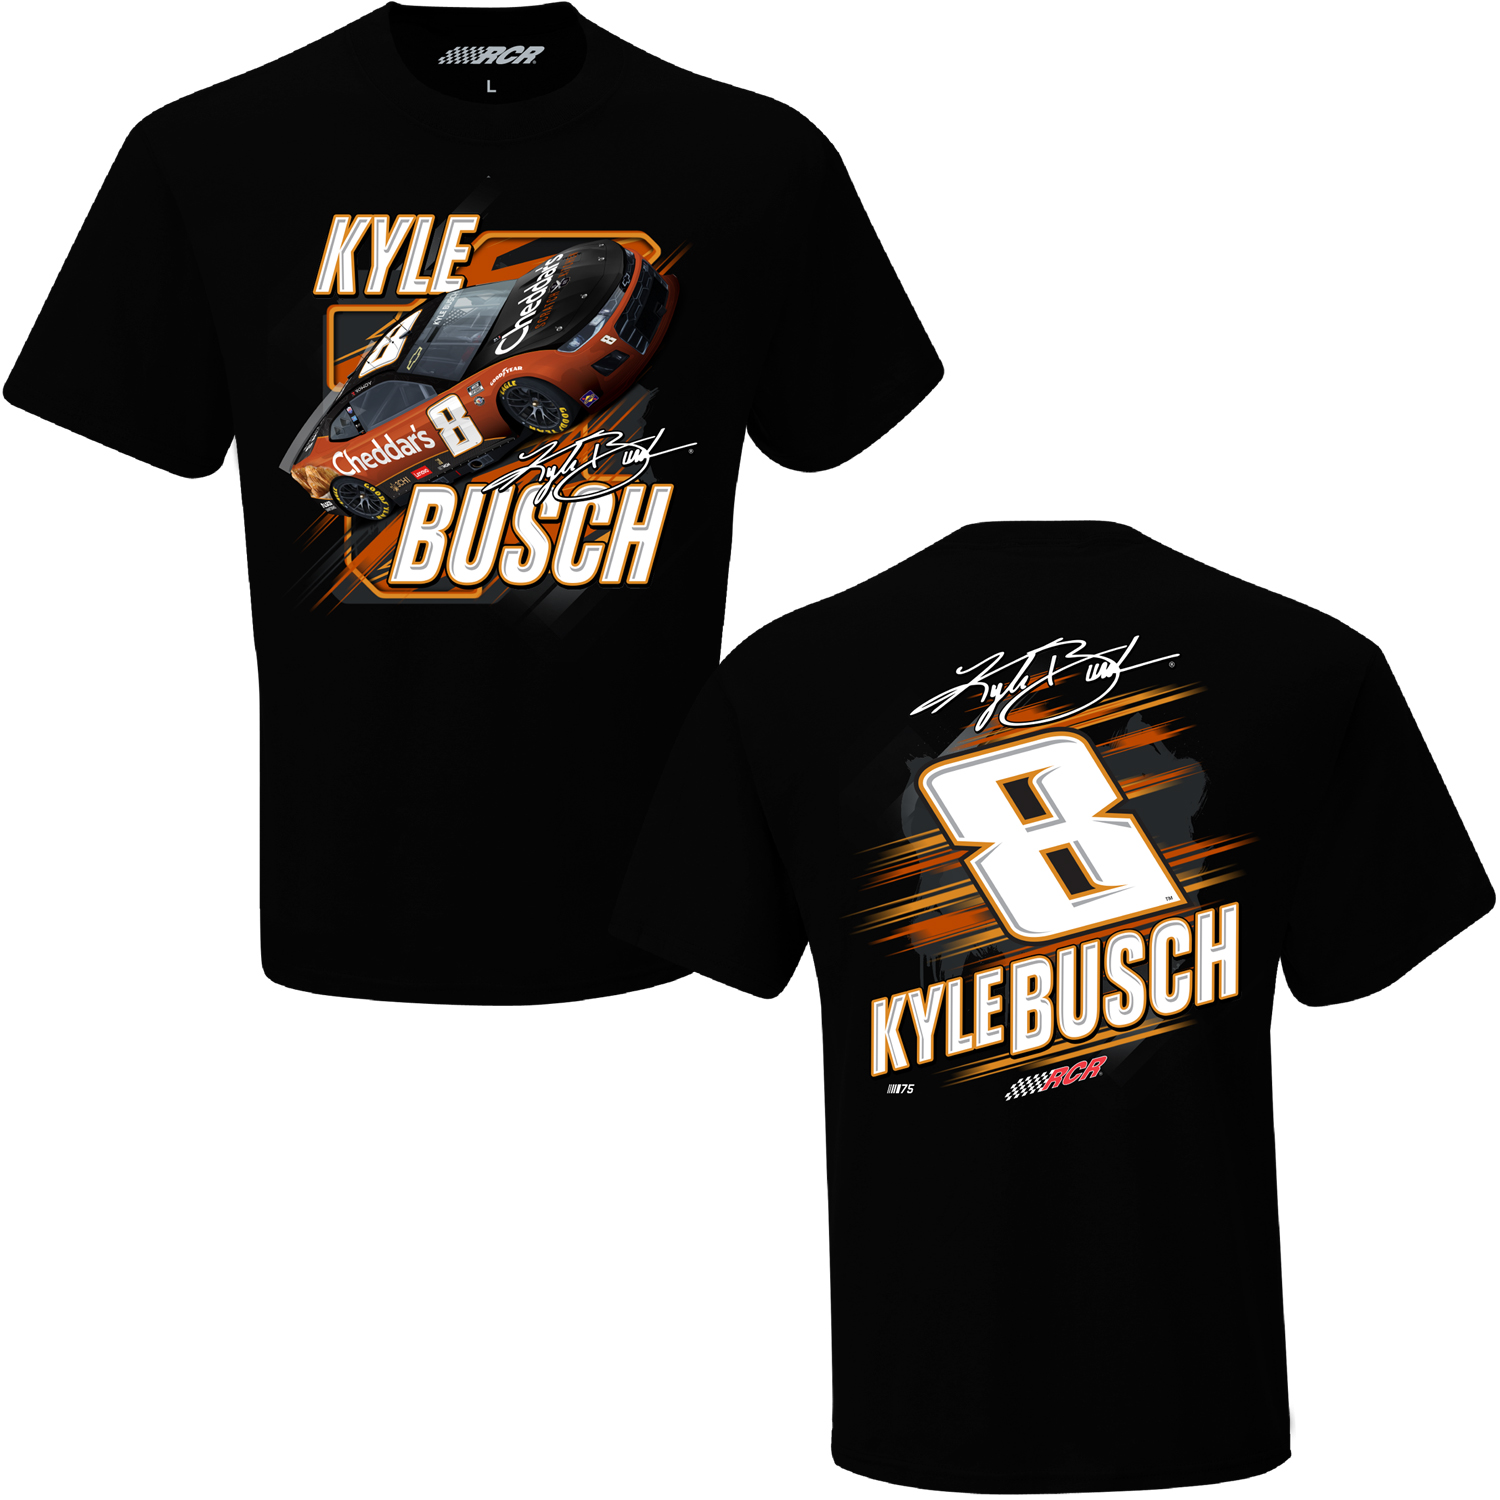 2023 Kyle Busch Cheddar's black 2 spot t-shirt